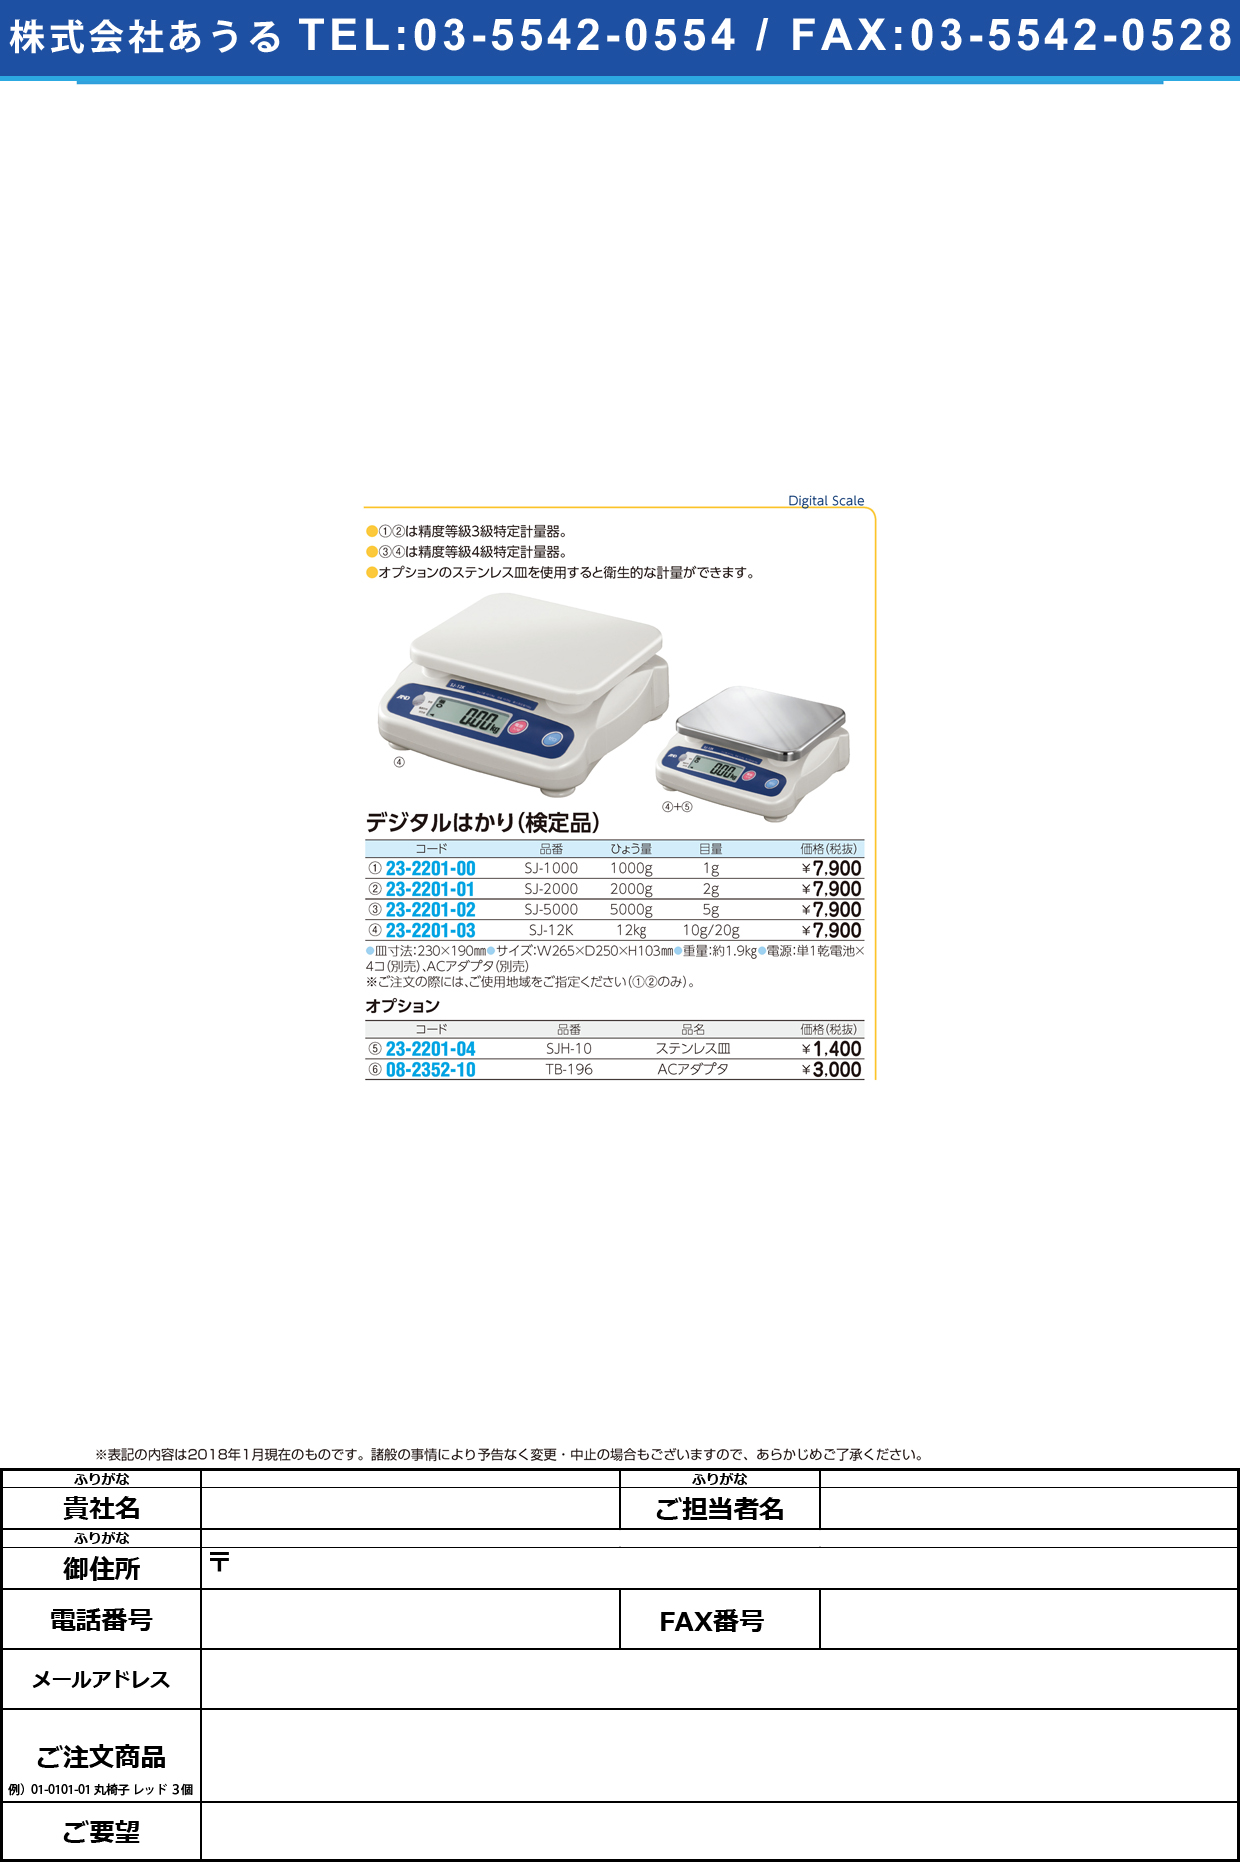 (23-2201-04)デジタルはかり専用ステンレス皿 SJH-10 ﾃﾞｼﾞﾀﾙﾊｶﾘｾﾝﾖｳｽﾃﾝﾚｽｻﾞ【1枚単位】【2019年カタログ商品】